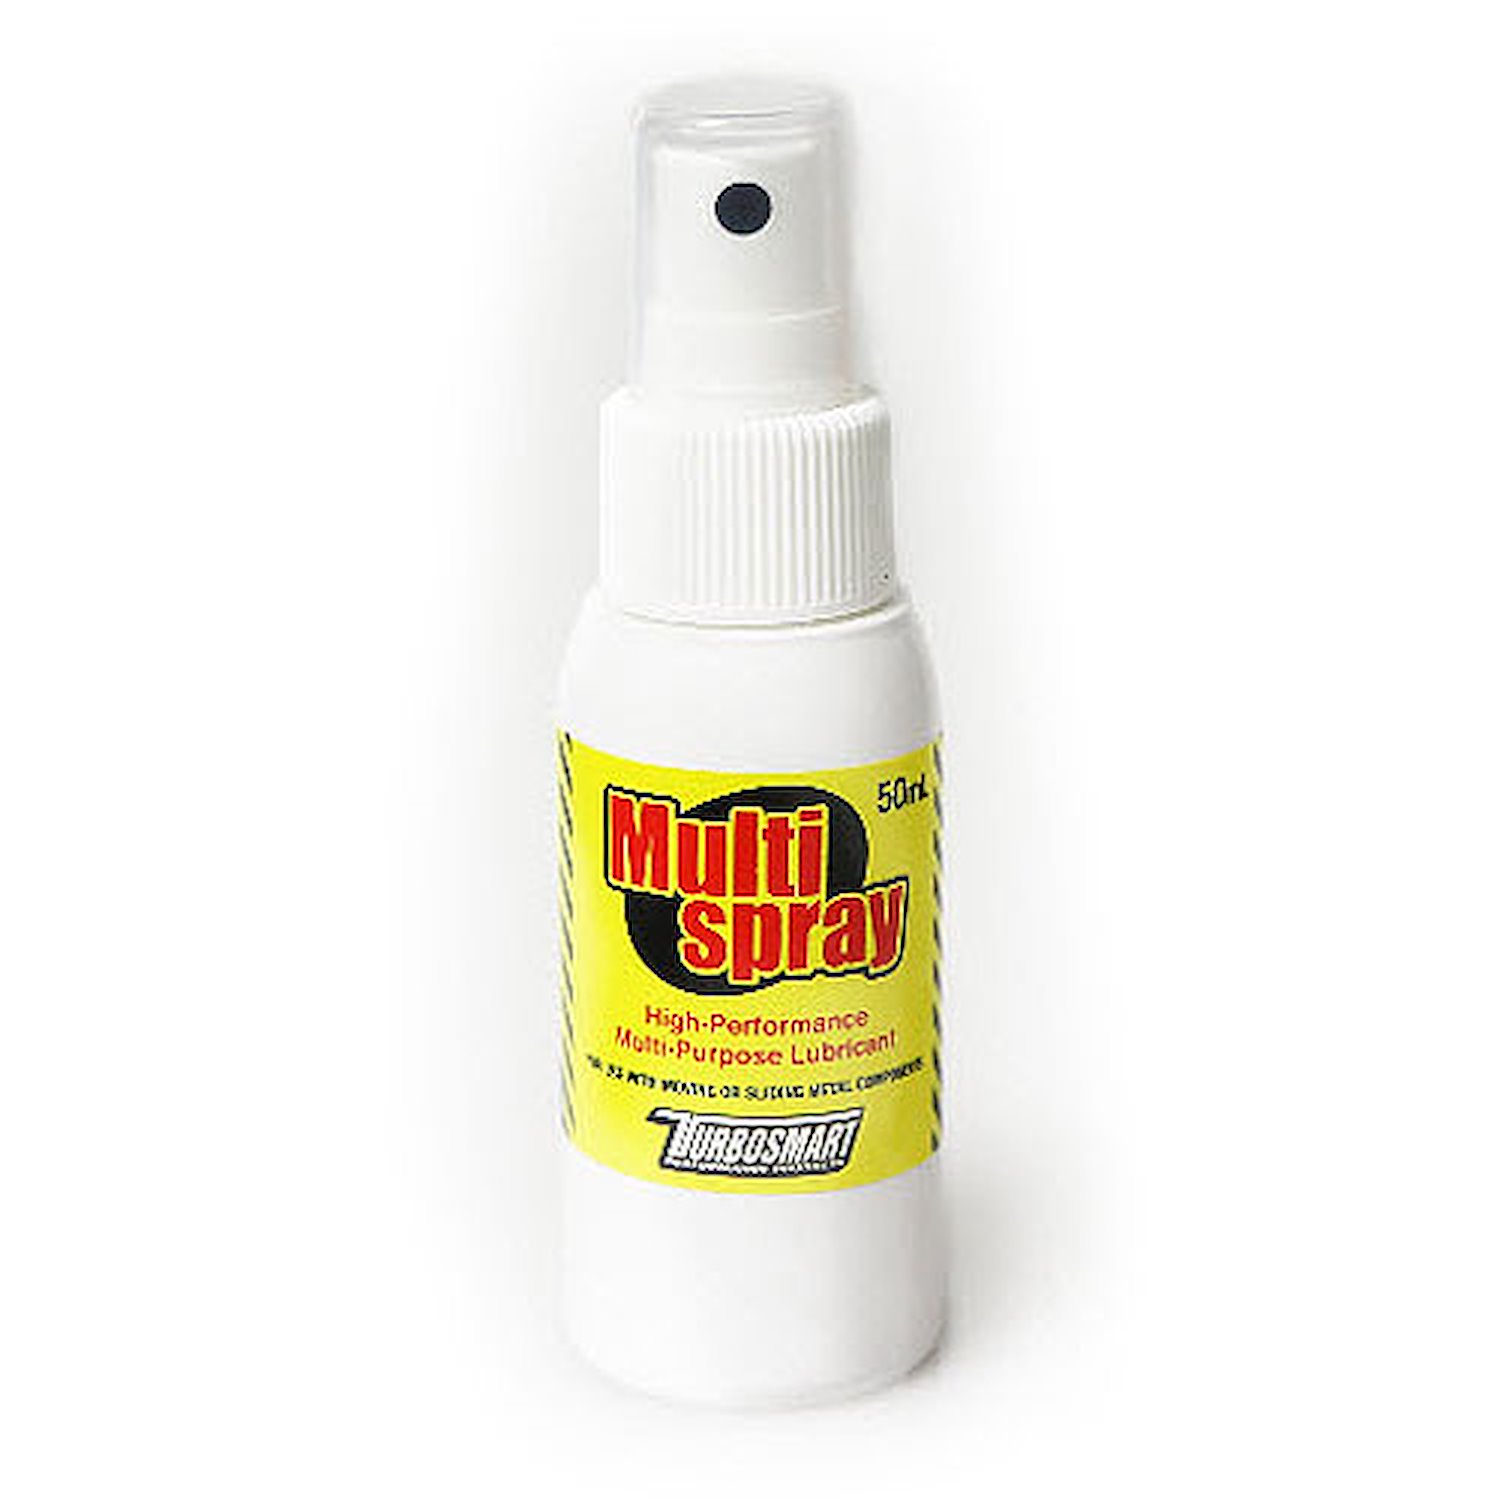 Multi Spray BOV Lubricant 50ml